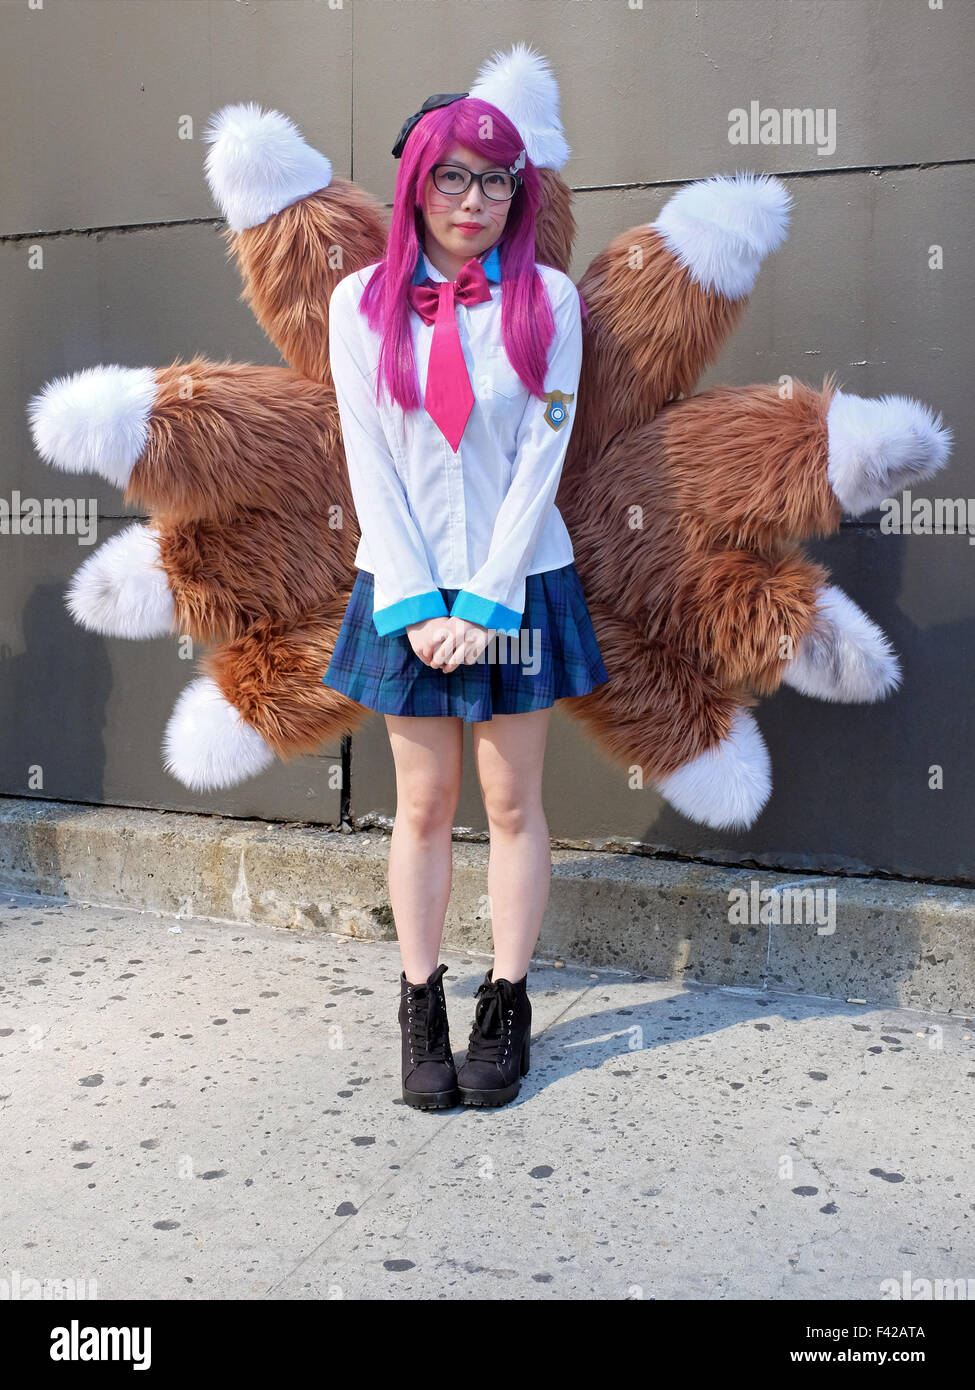 Un giovane partecipante della New York Comic Con 2015 vestito come Ahri dalla Lega delle leggende. Foto Stock